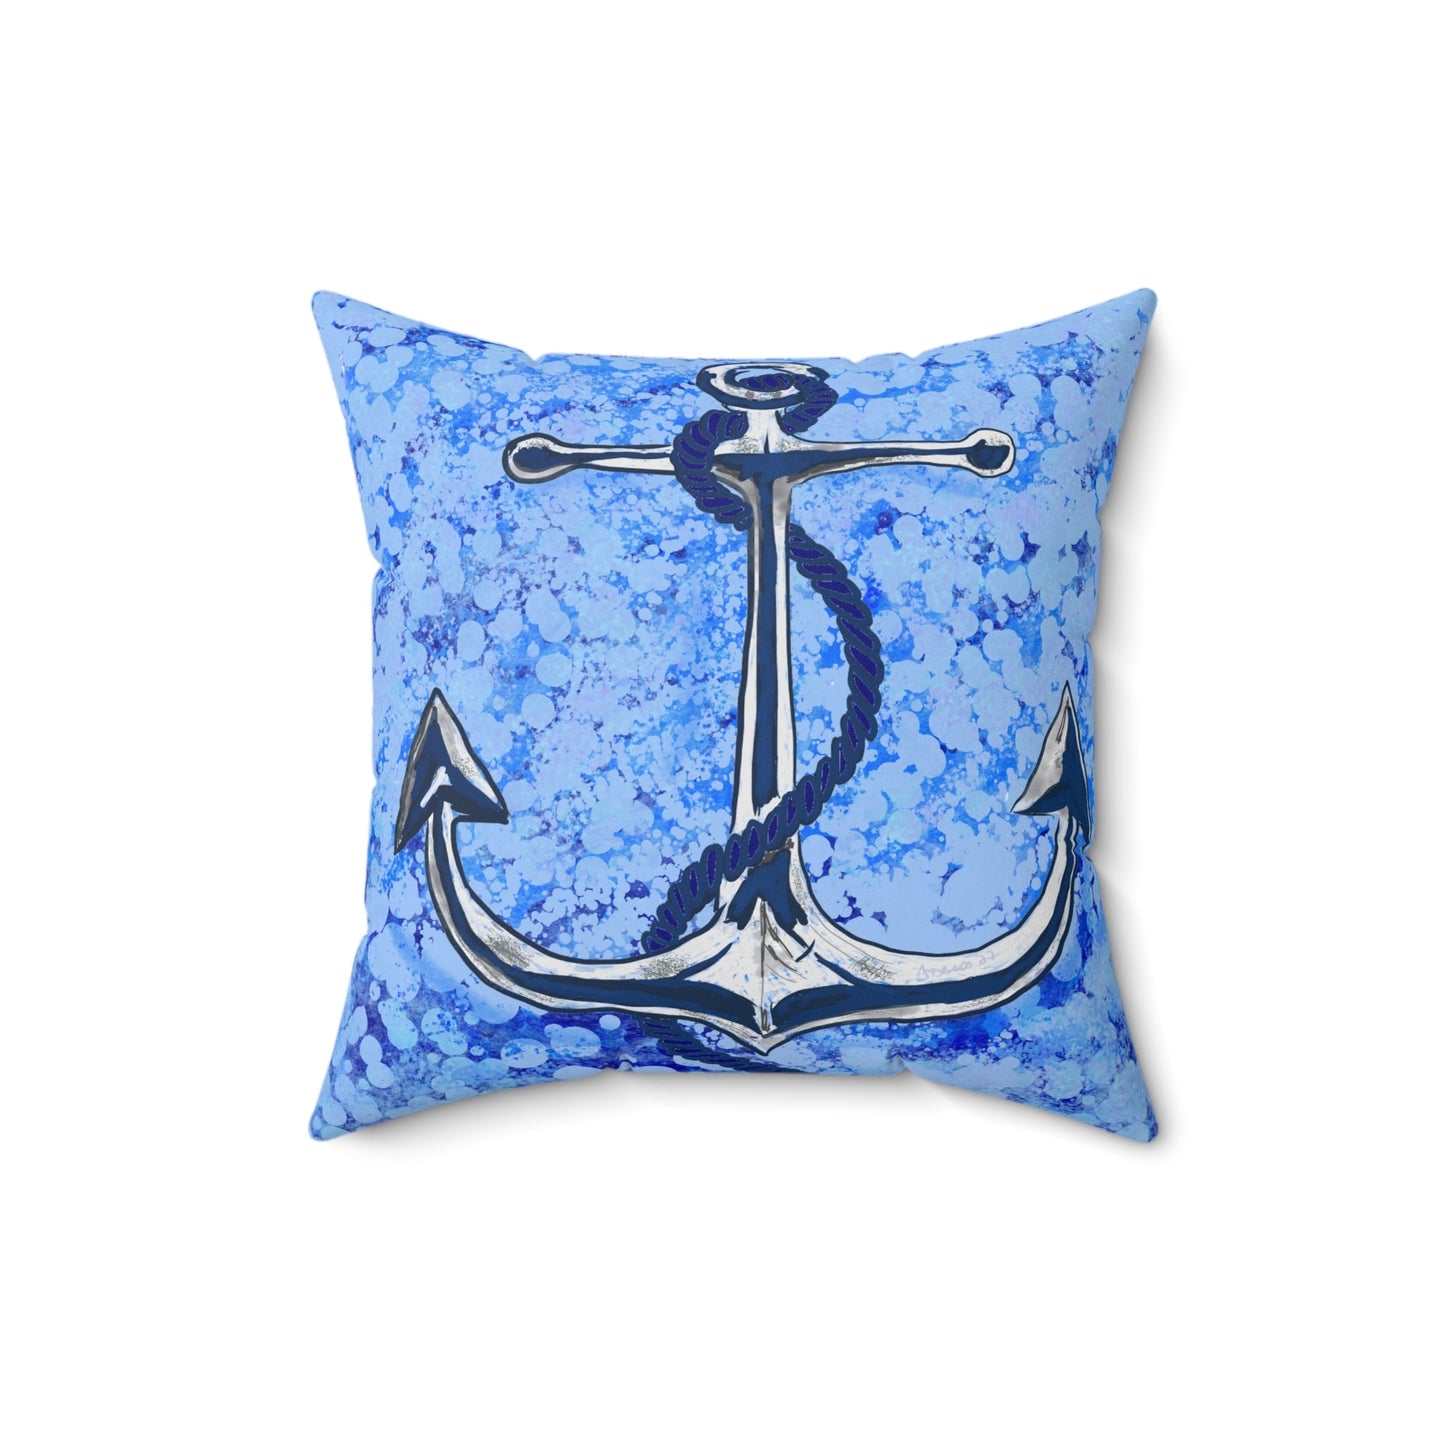 Anchor Spun Polyester Square Pillow - Blue Cava